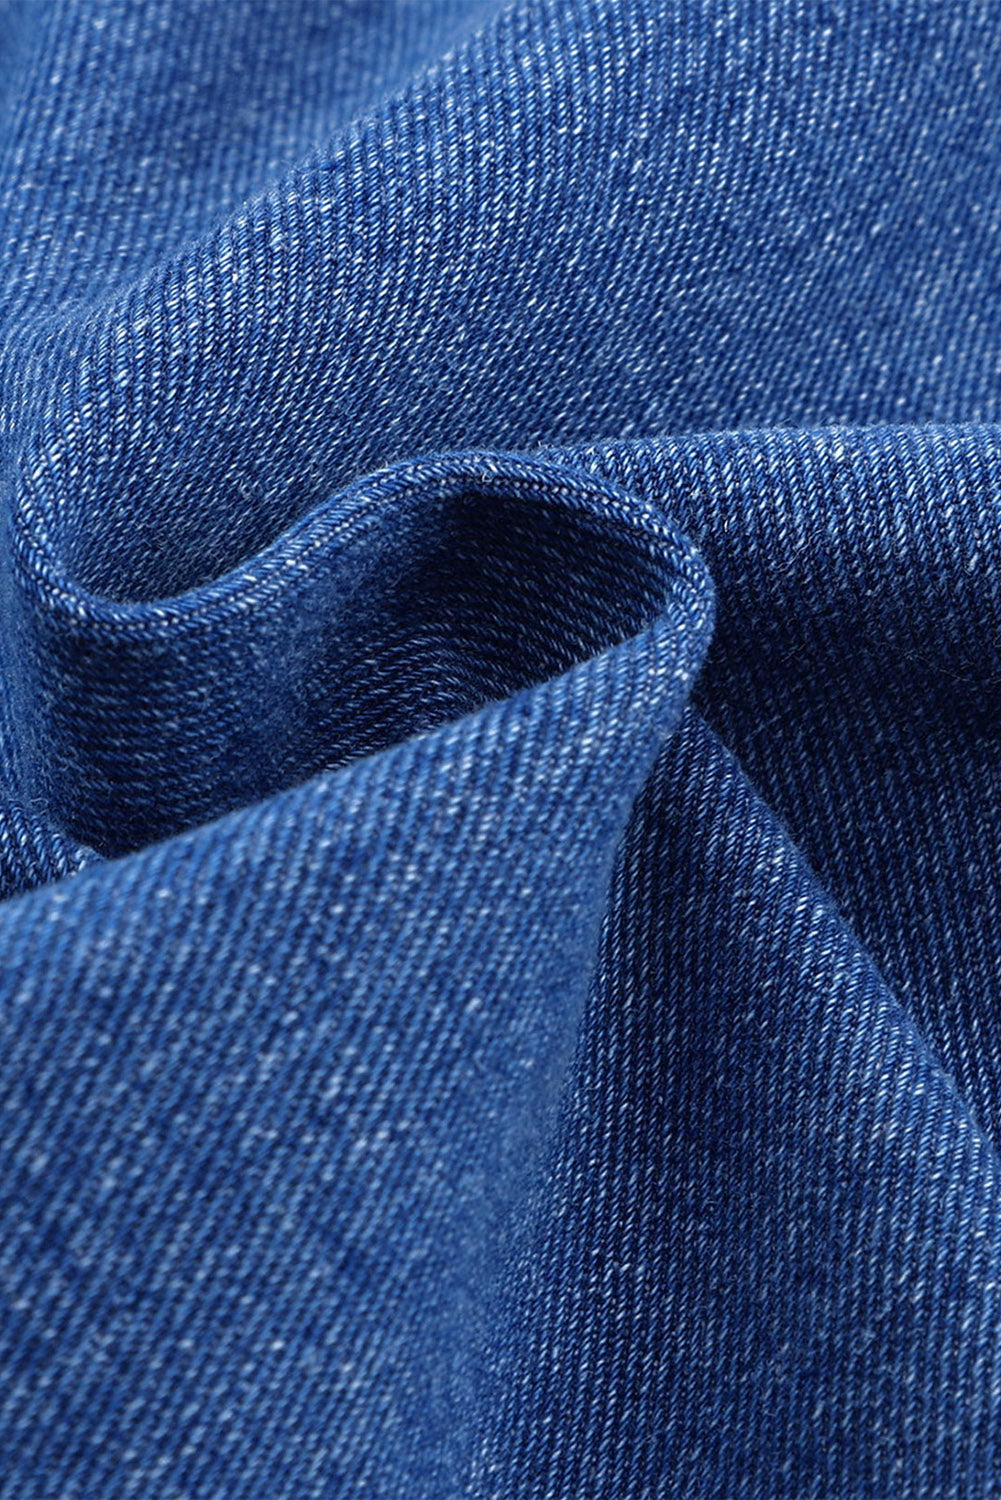 Giacca di jeans allentata con spalle cadenti e tasche sul petto blu